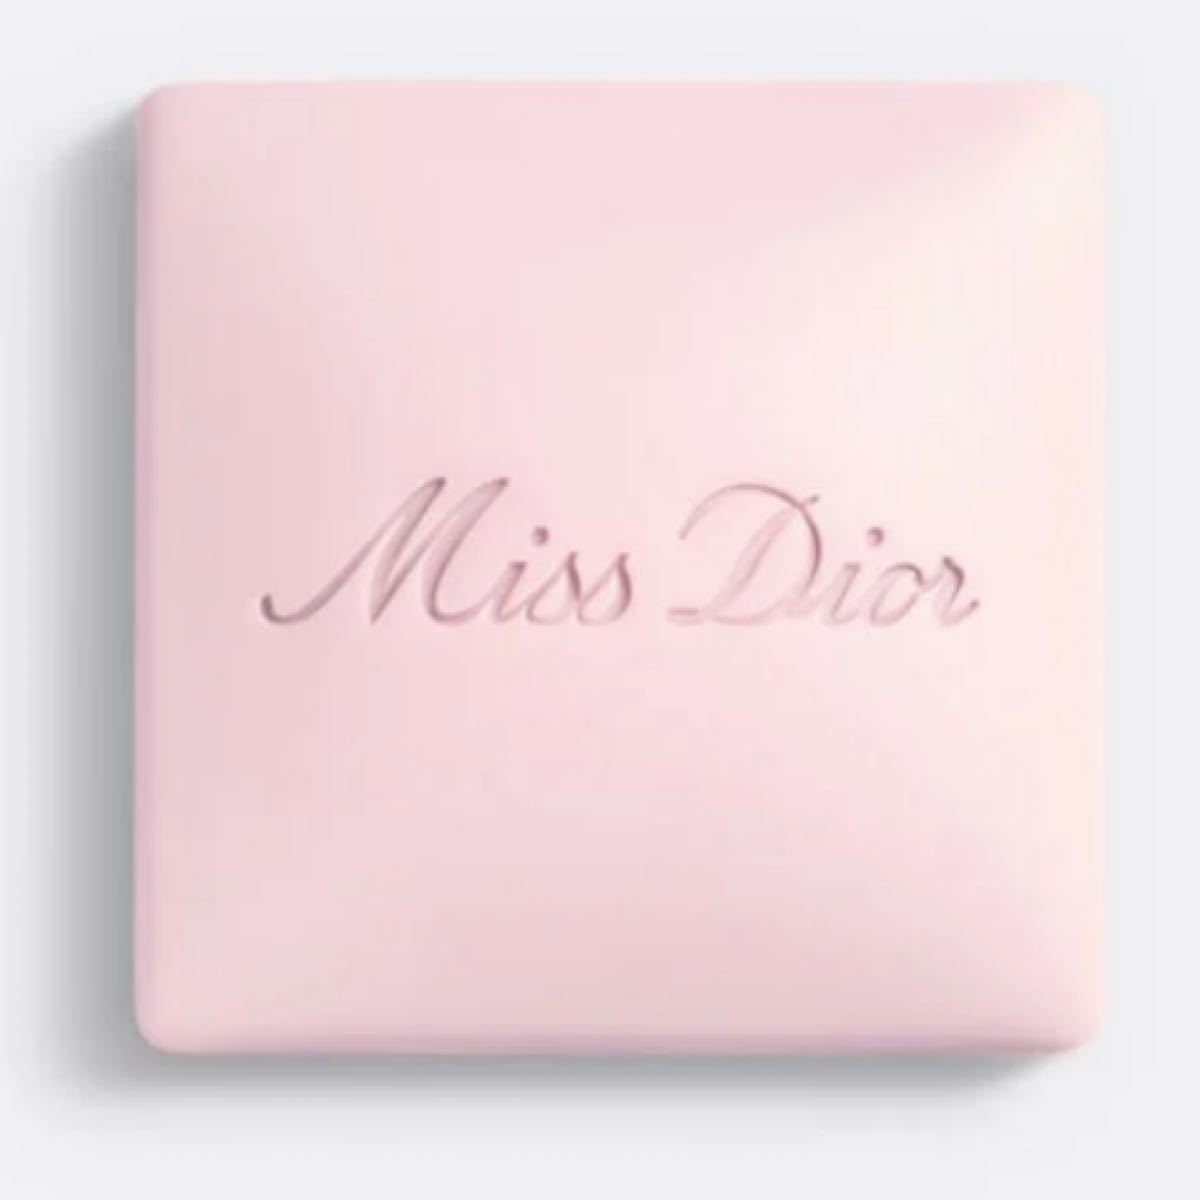 ディオール　Dior クリスマス　ホリデー　2022 ミスディオール　石鹸　ソープ　ギフト　限定ボックス　限定ショッパー